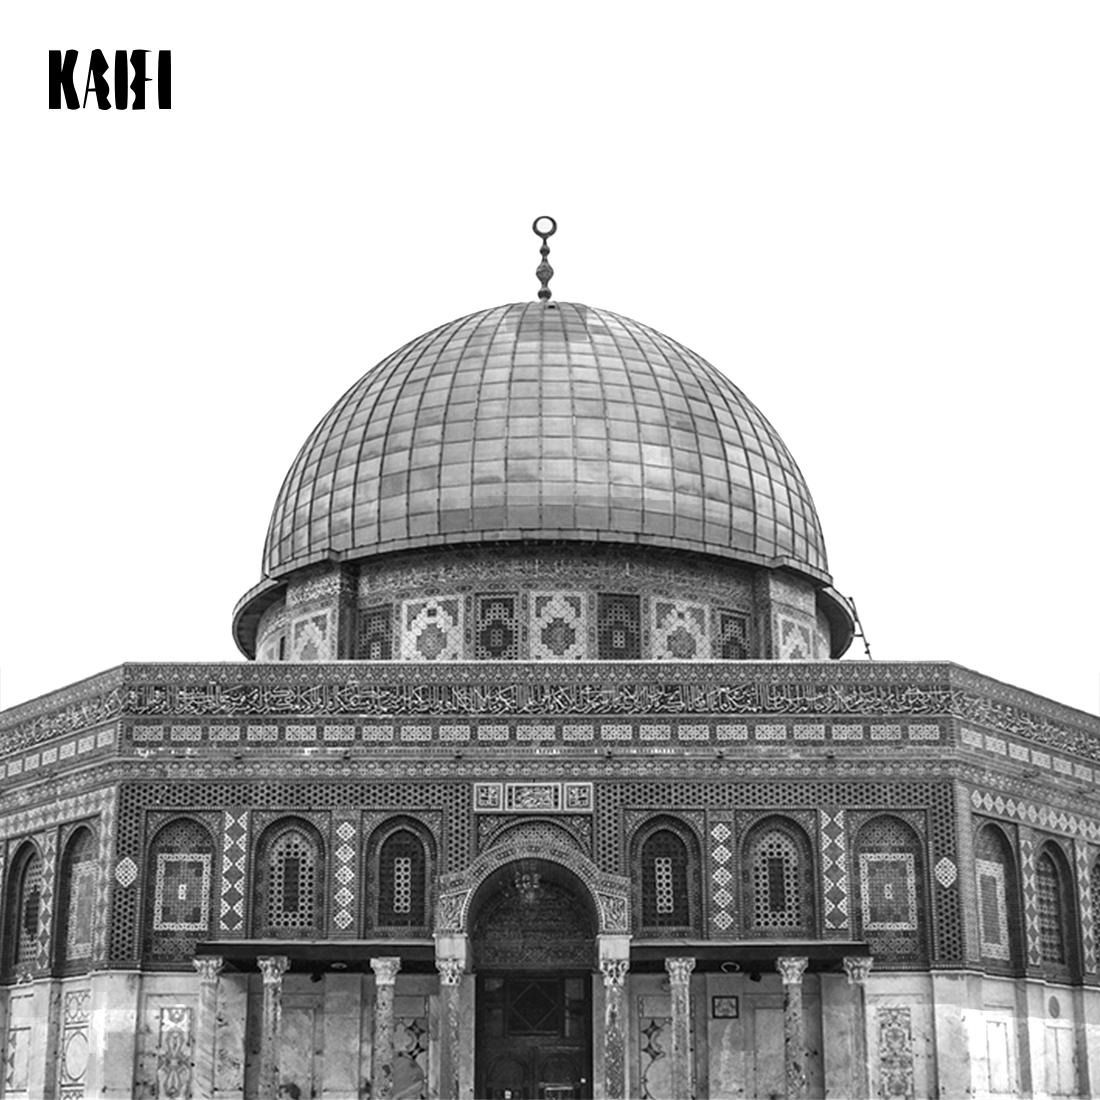 Al-Aqsa mosque cover image.